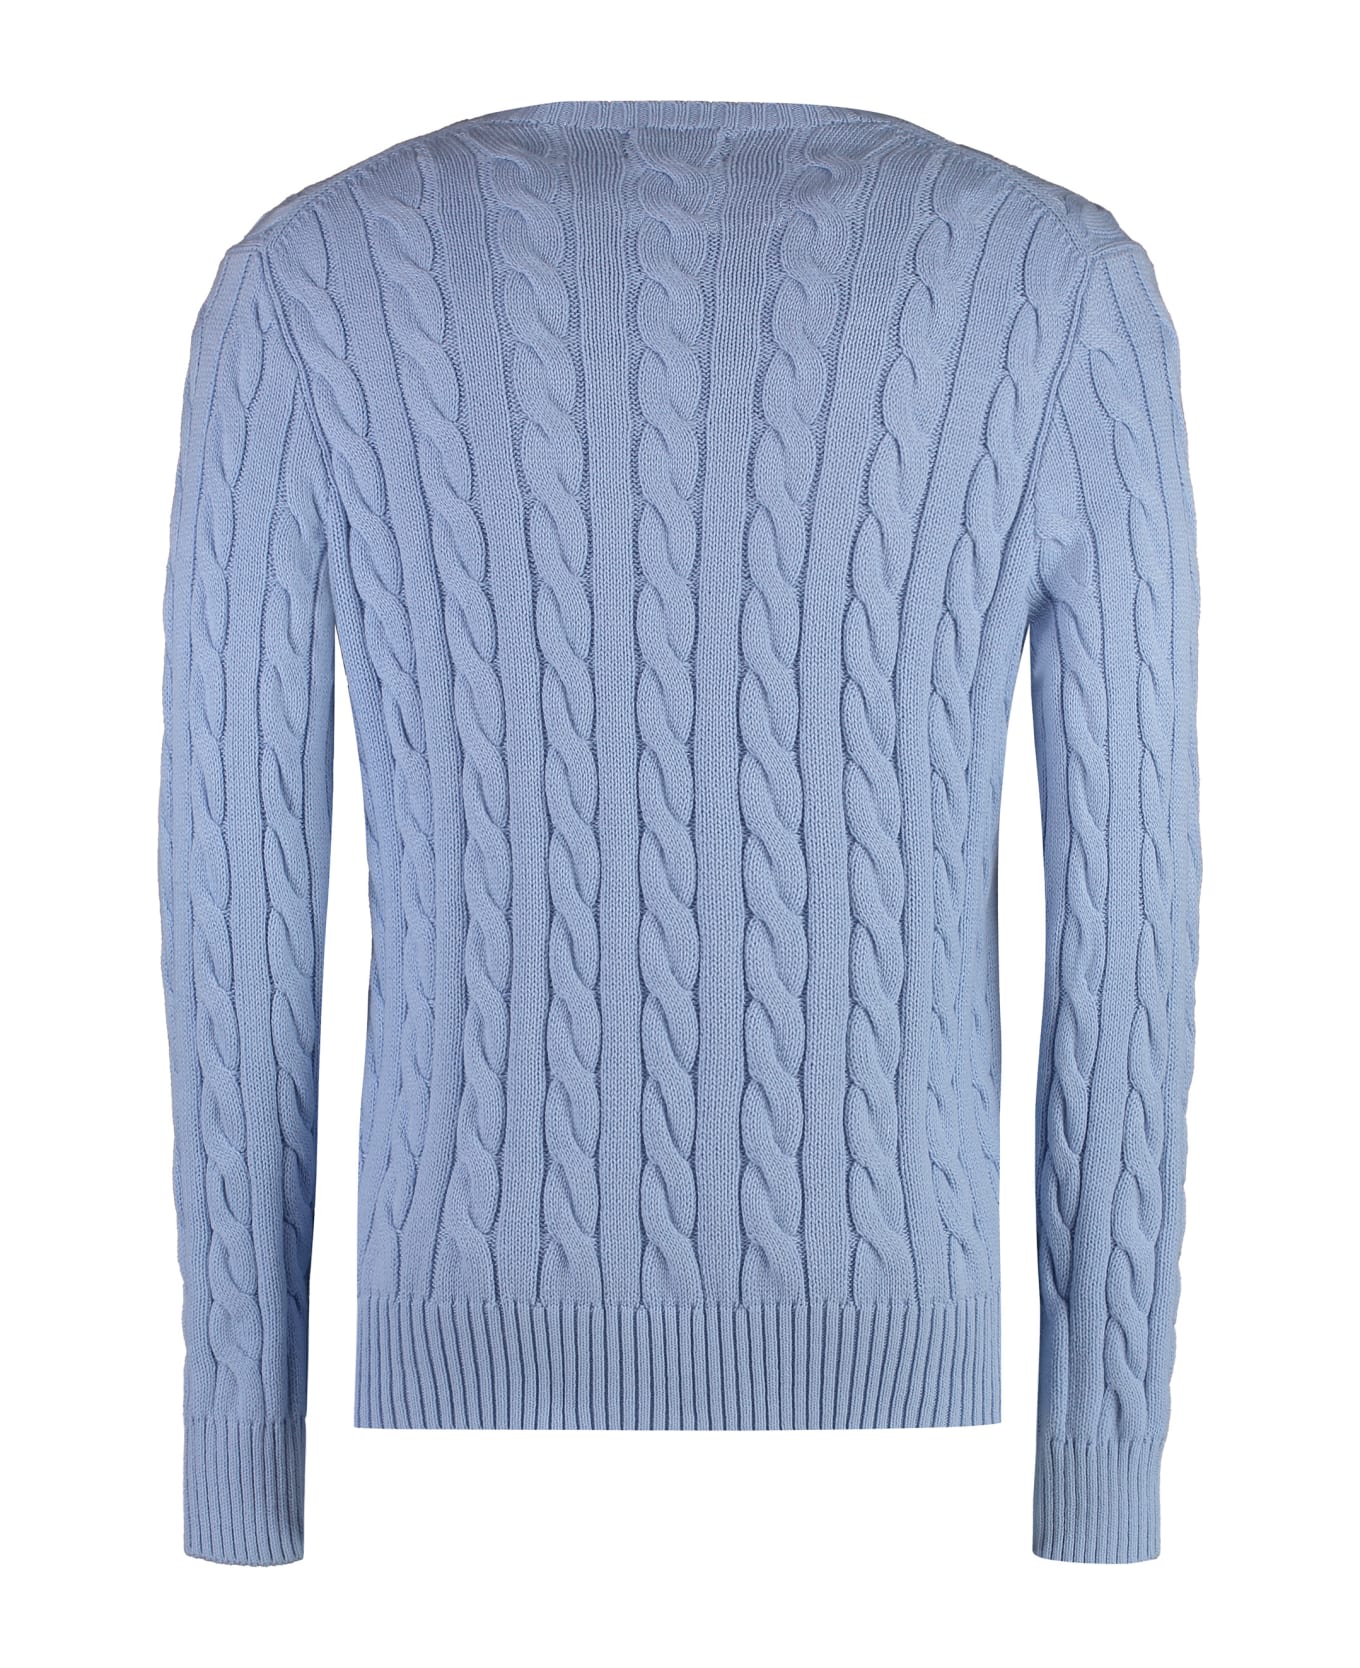 Polo Ralph Lauren Crew-neck Wool Sweater - Light Blue